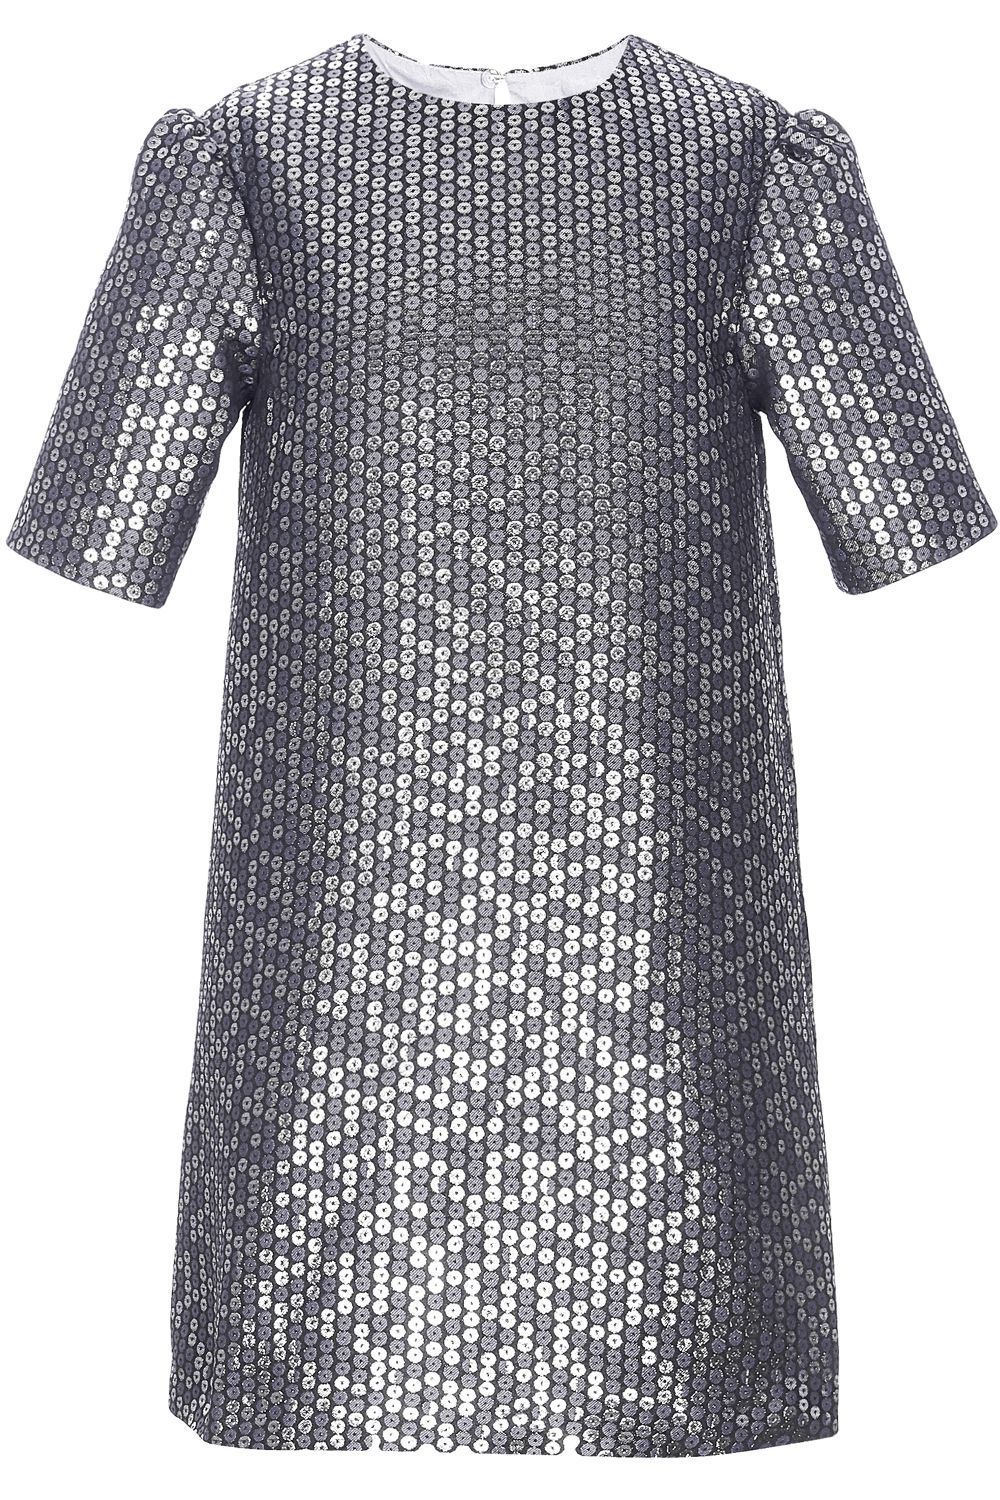 Платье Silver Spoon, размер 152, цвет серый SNFWG-939-23624-941 - фото 2